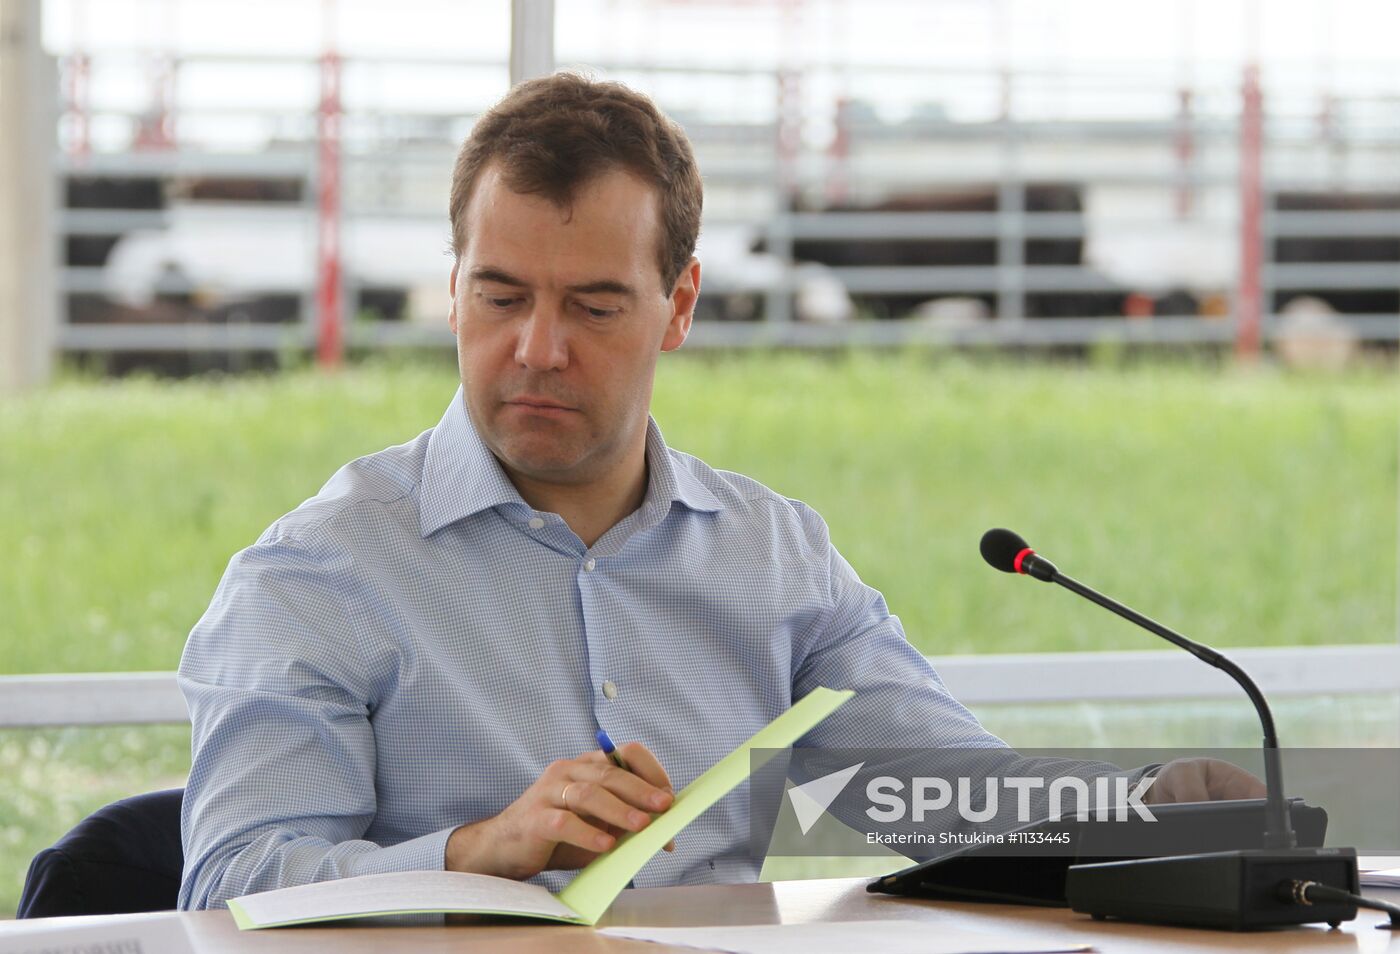 Dmitry Medvedev's working visit to Bryansk Region